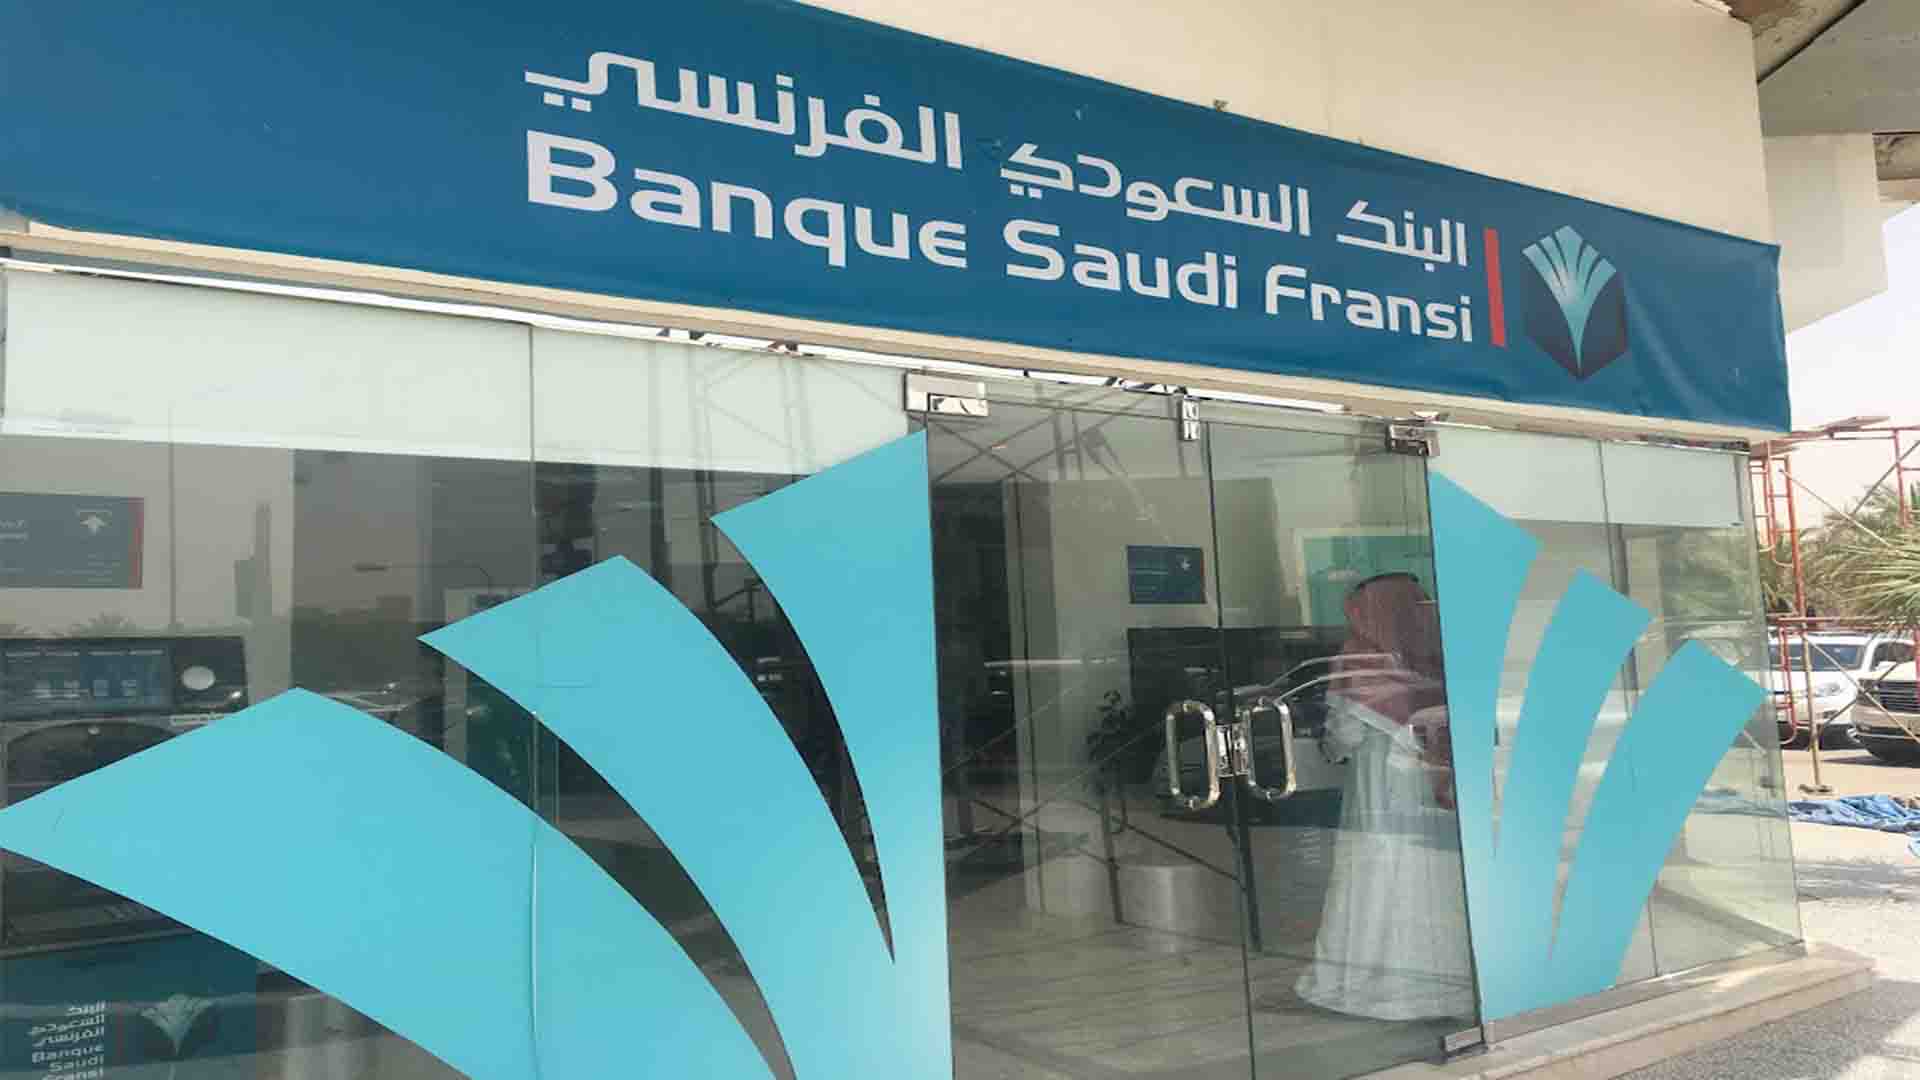 البنك السعودي الفرنسي في الرياض العناوين ارقام الهاتف بيانات الاتصال Matrix219